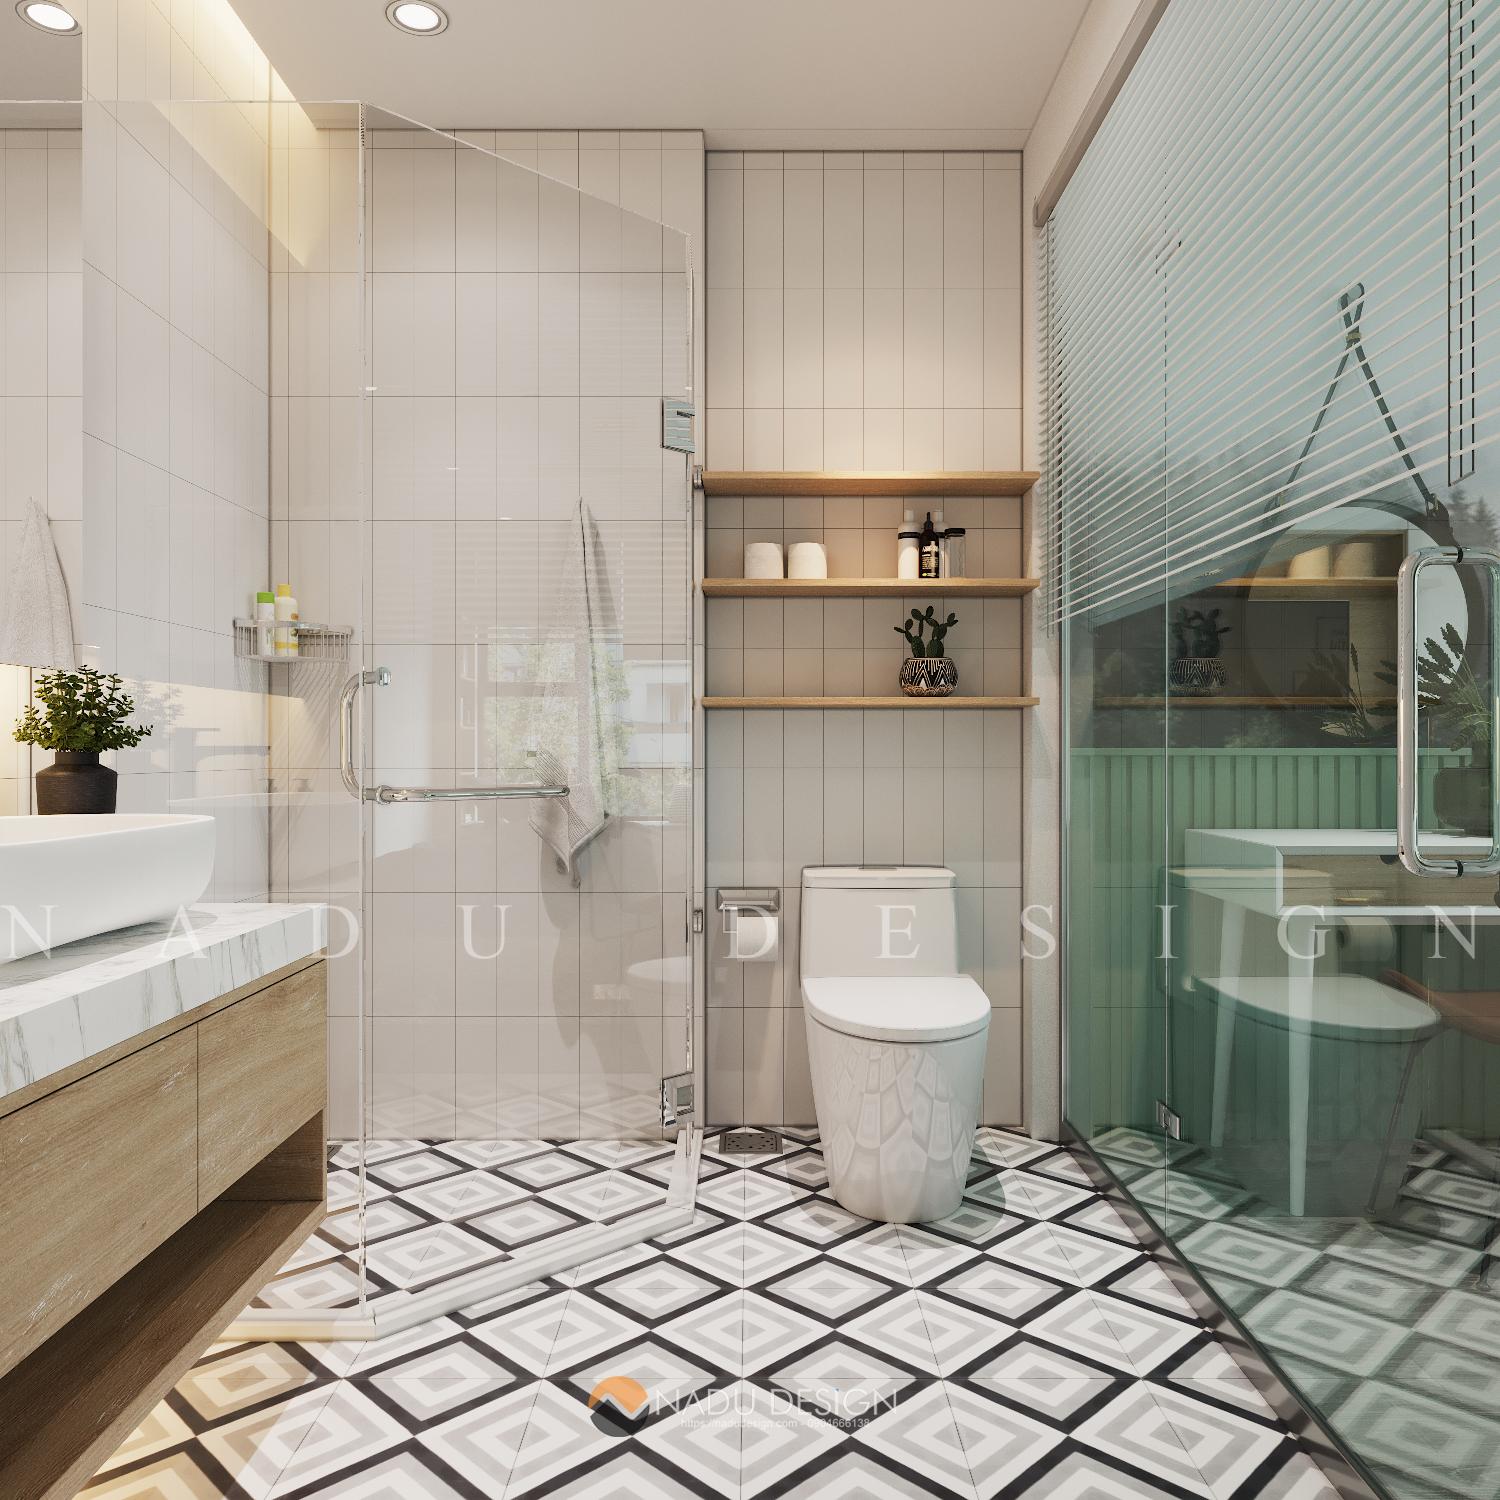 Thiết kế nhà vệ sinh âm sàn tiện nghi: Nhà vệ sinh âm sàn đang trở thành xu hướng thiết kế trong những năm gần đây. Chúng tôi sẽ giúp bạn thiết kế nhà vệ sinh âm sàn tiện nghi, tạo nên không gian thông thoáng và tiện lợi cho gia đình bạn.